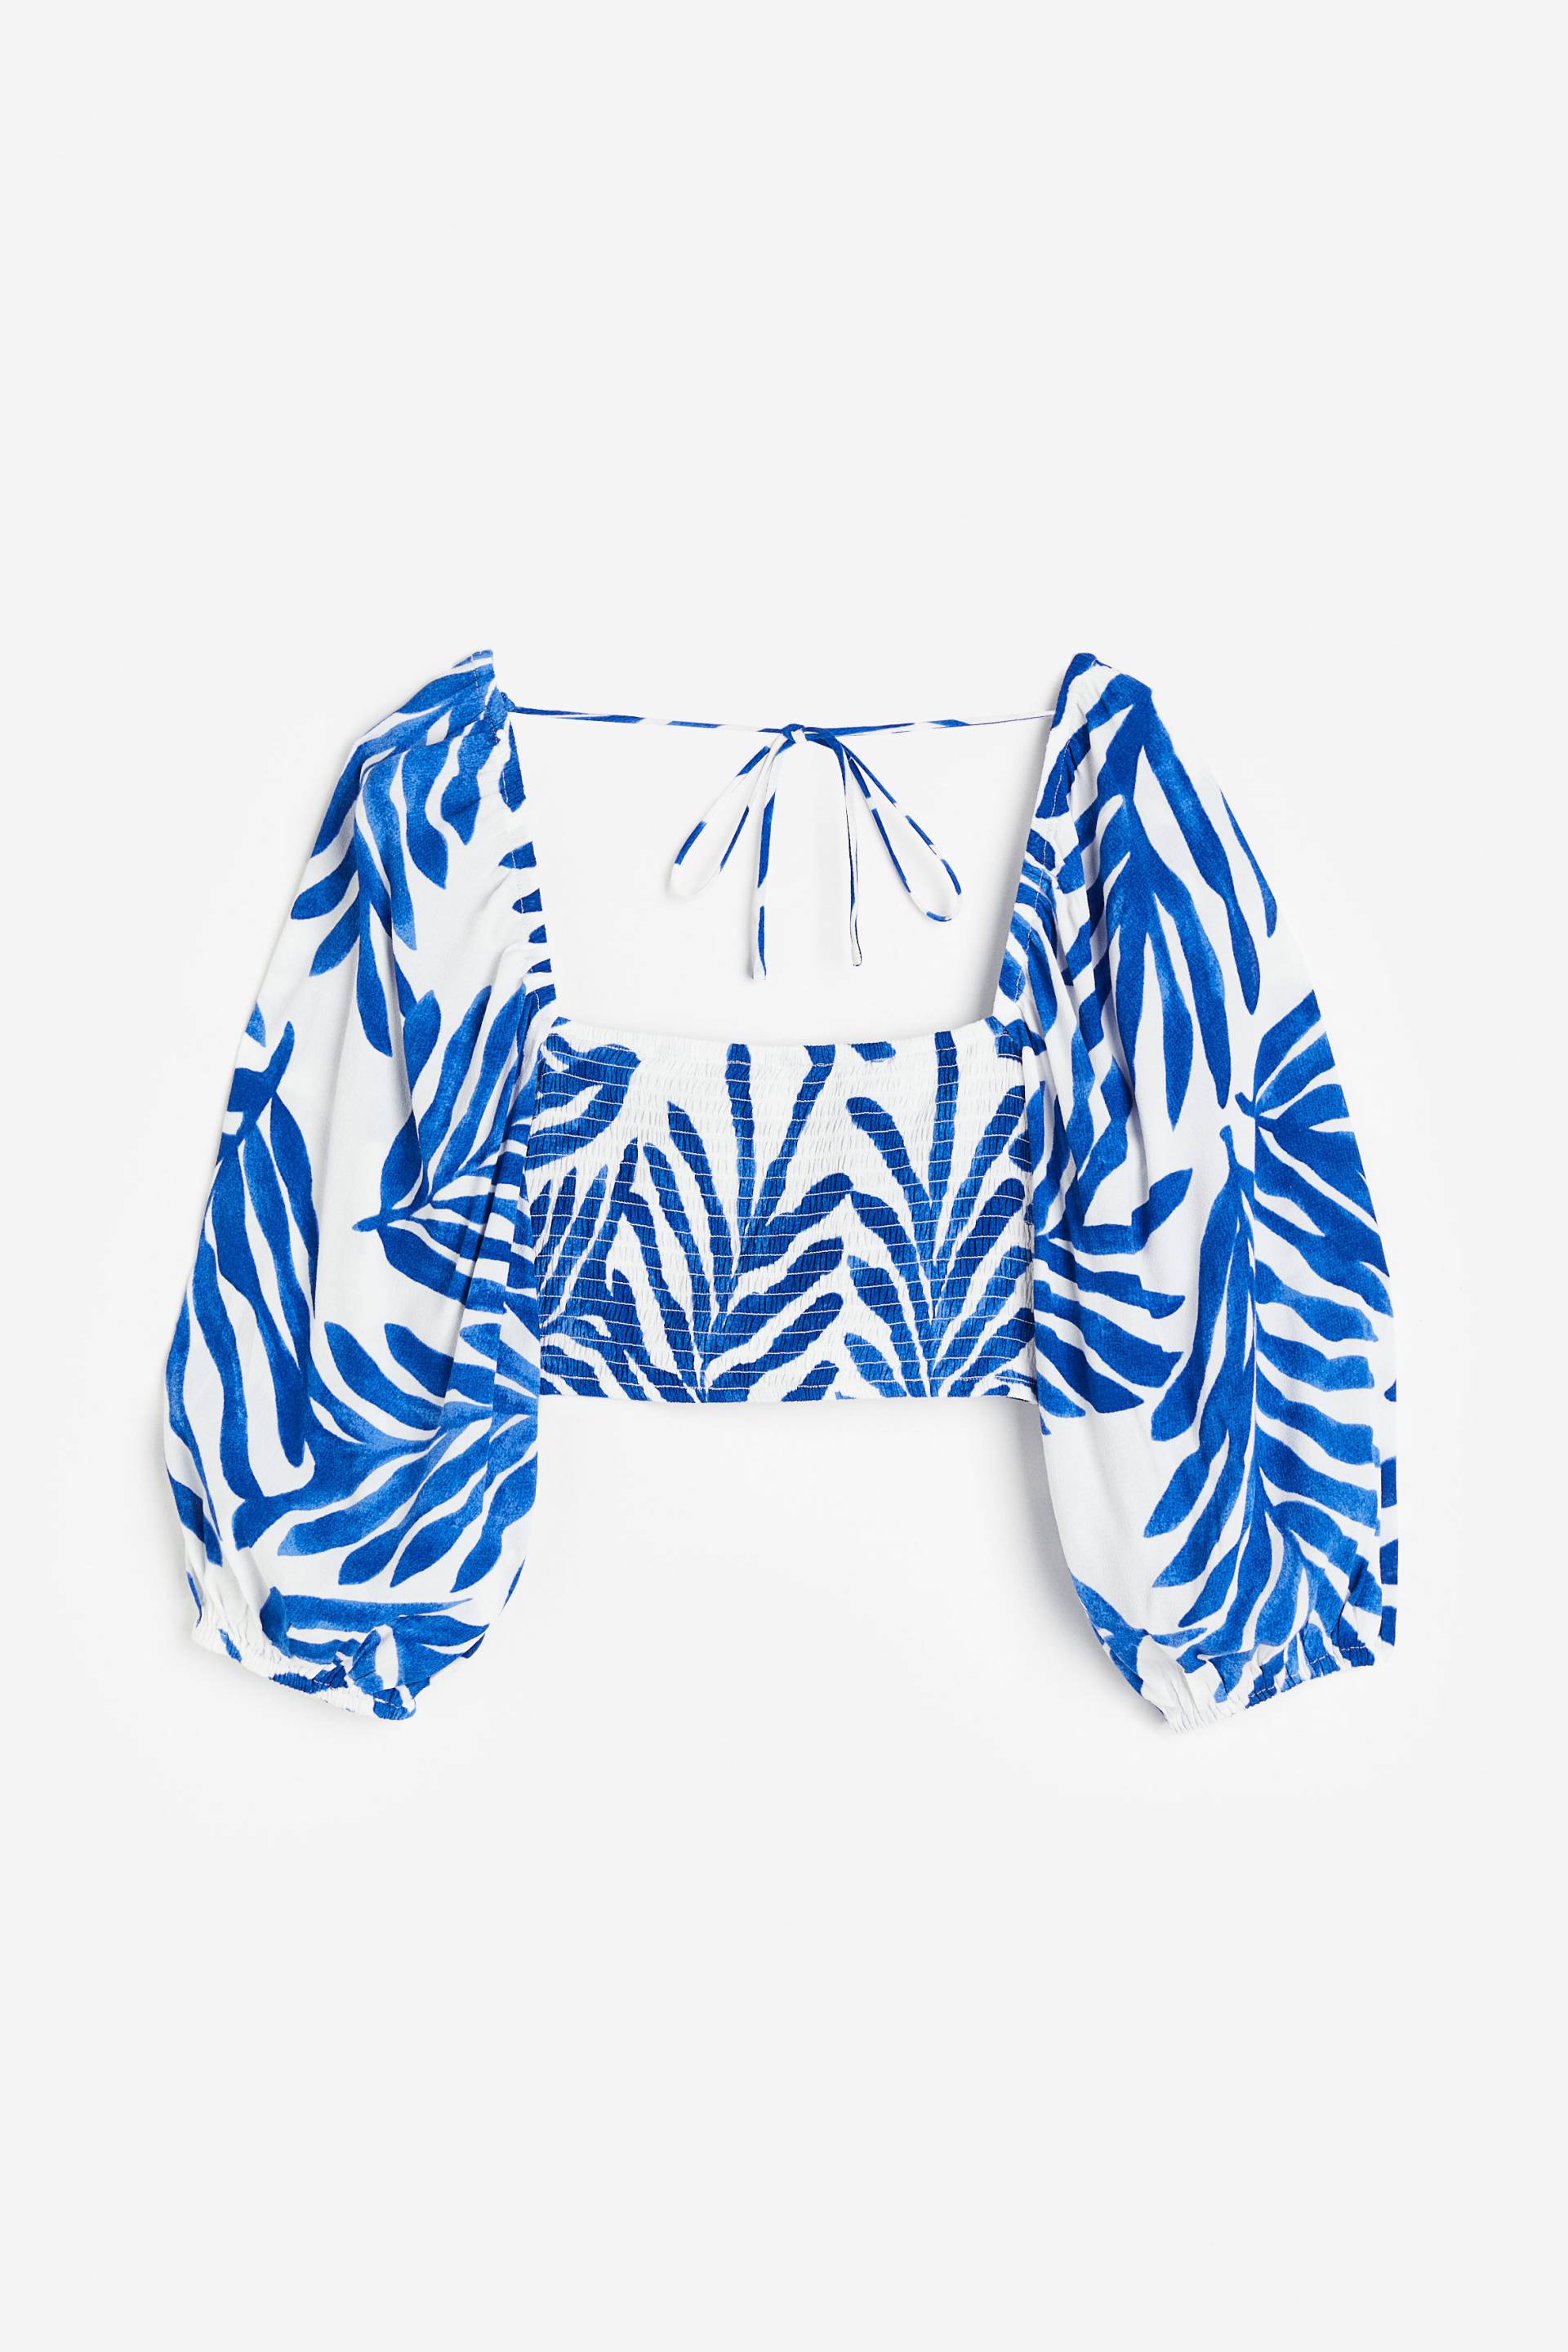 H&M Cropped Bluse Weiß/Blau gemustert, Blusen in Größe M. Farbe: White/blue patterned von H&M